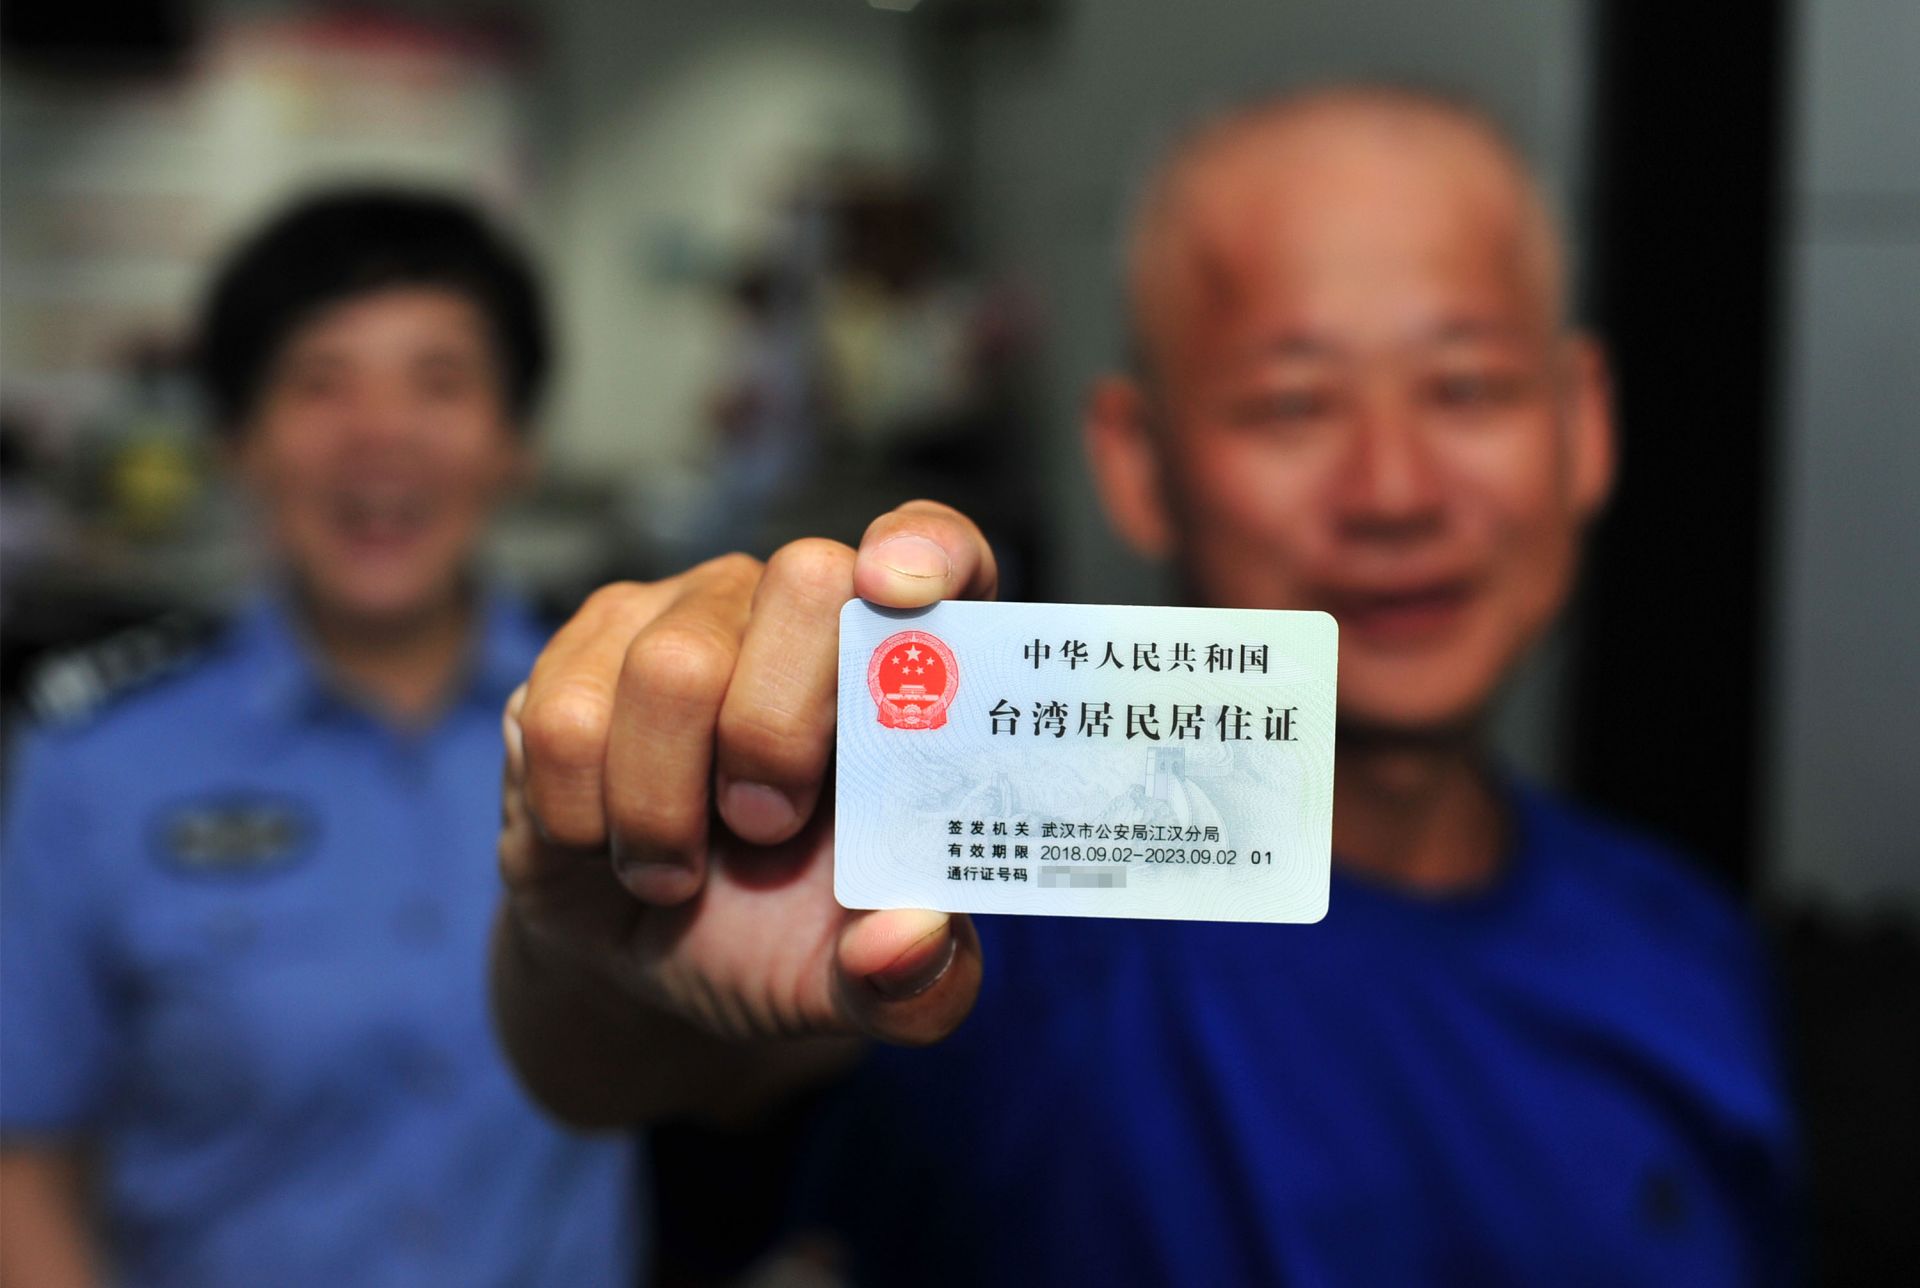 台湾居住证图片